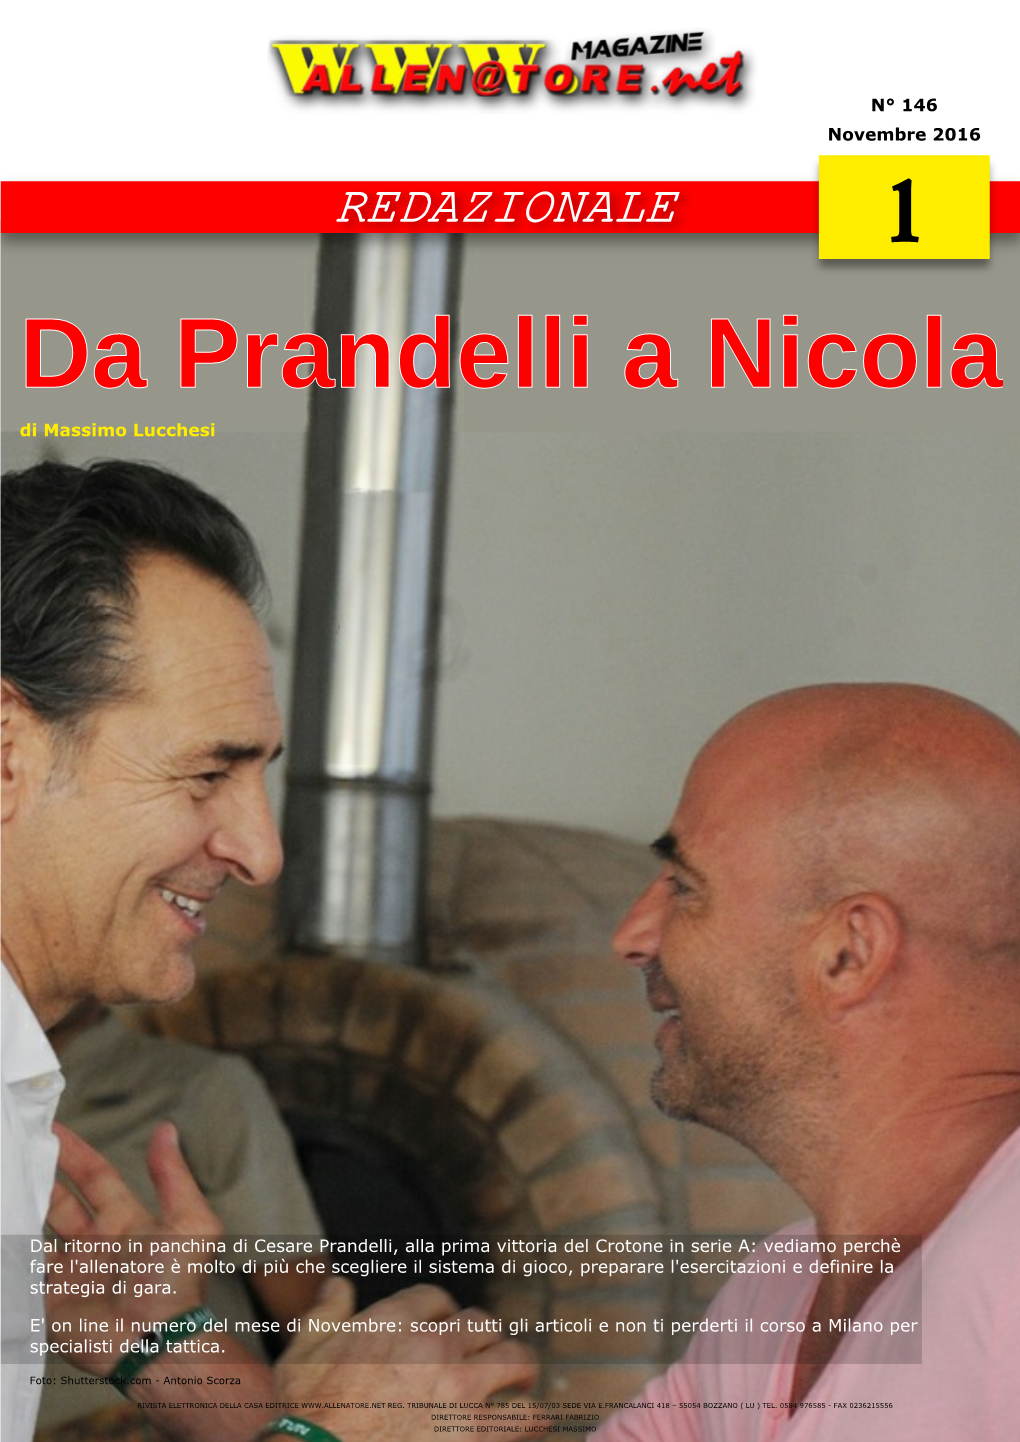 Da Prandelli a Nicola Di Massimo Lucchesi